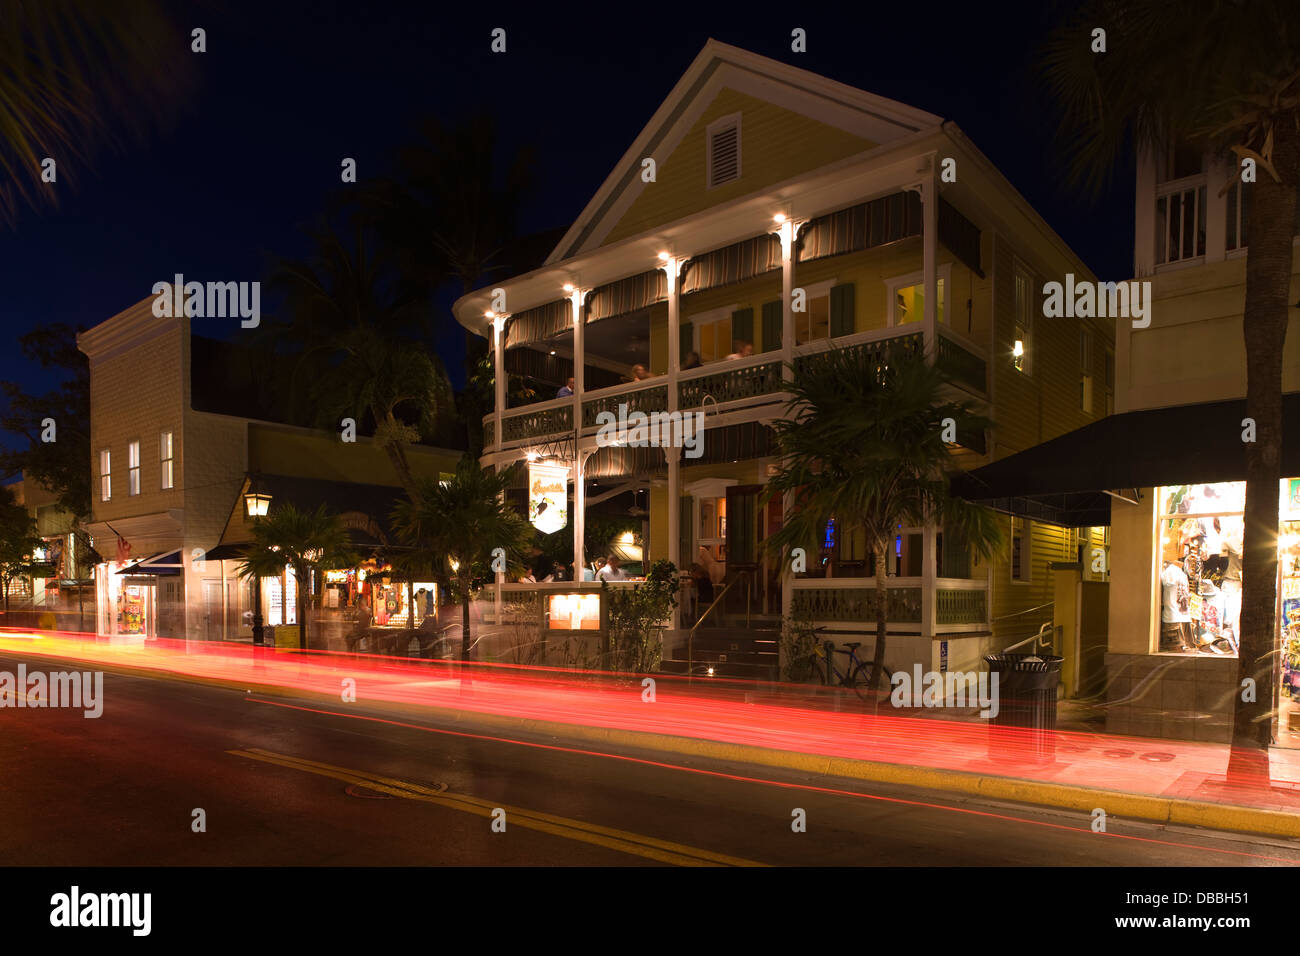 RESTAURANTS DUVAL STREET OLD TOWN DISTRICT HISTORIQUE DE KEY WEST EN FLORIDE USA Banque D'Images